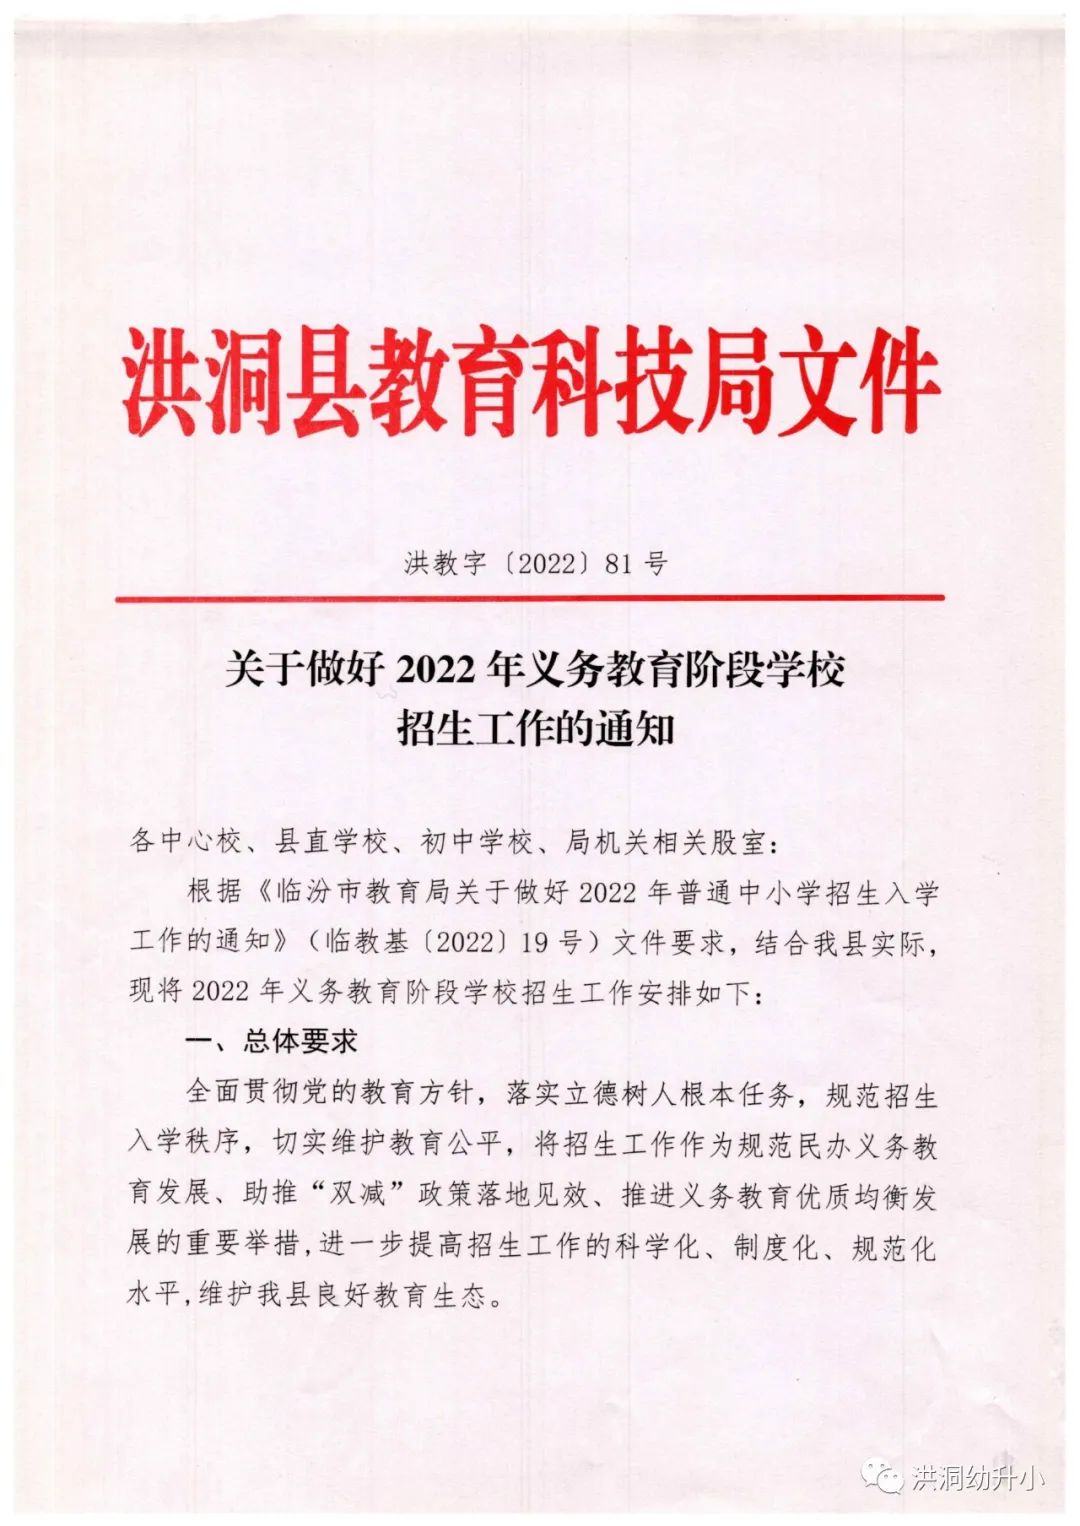 洪洞县关于做好2022年义务教育阶段学校招生工作的通知